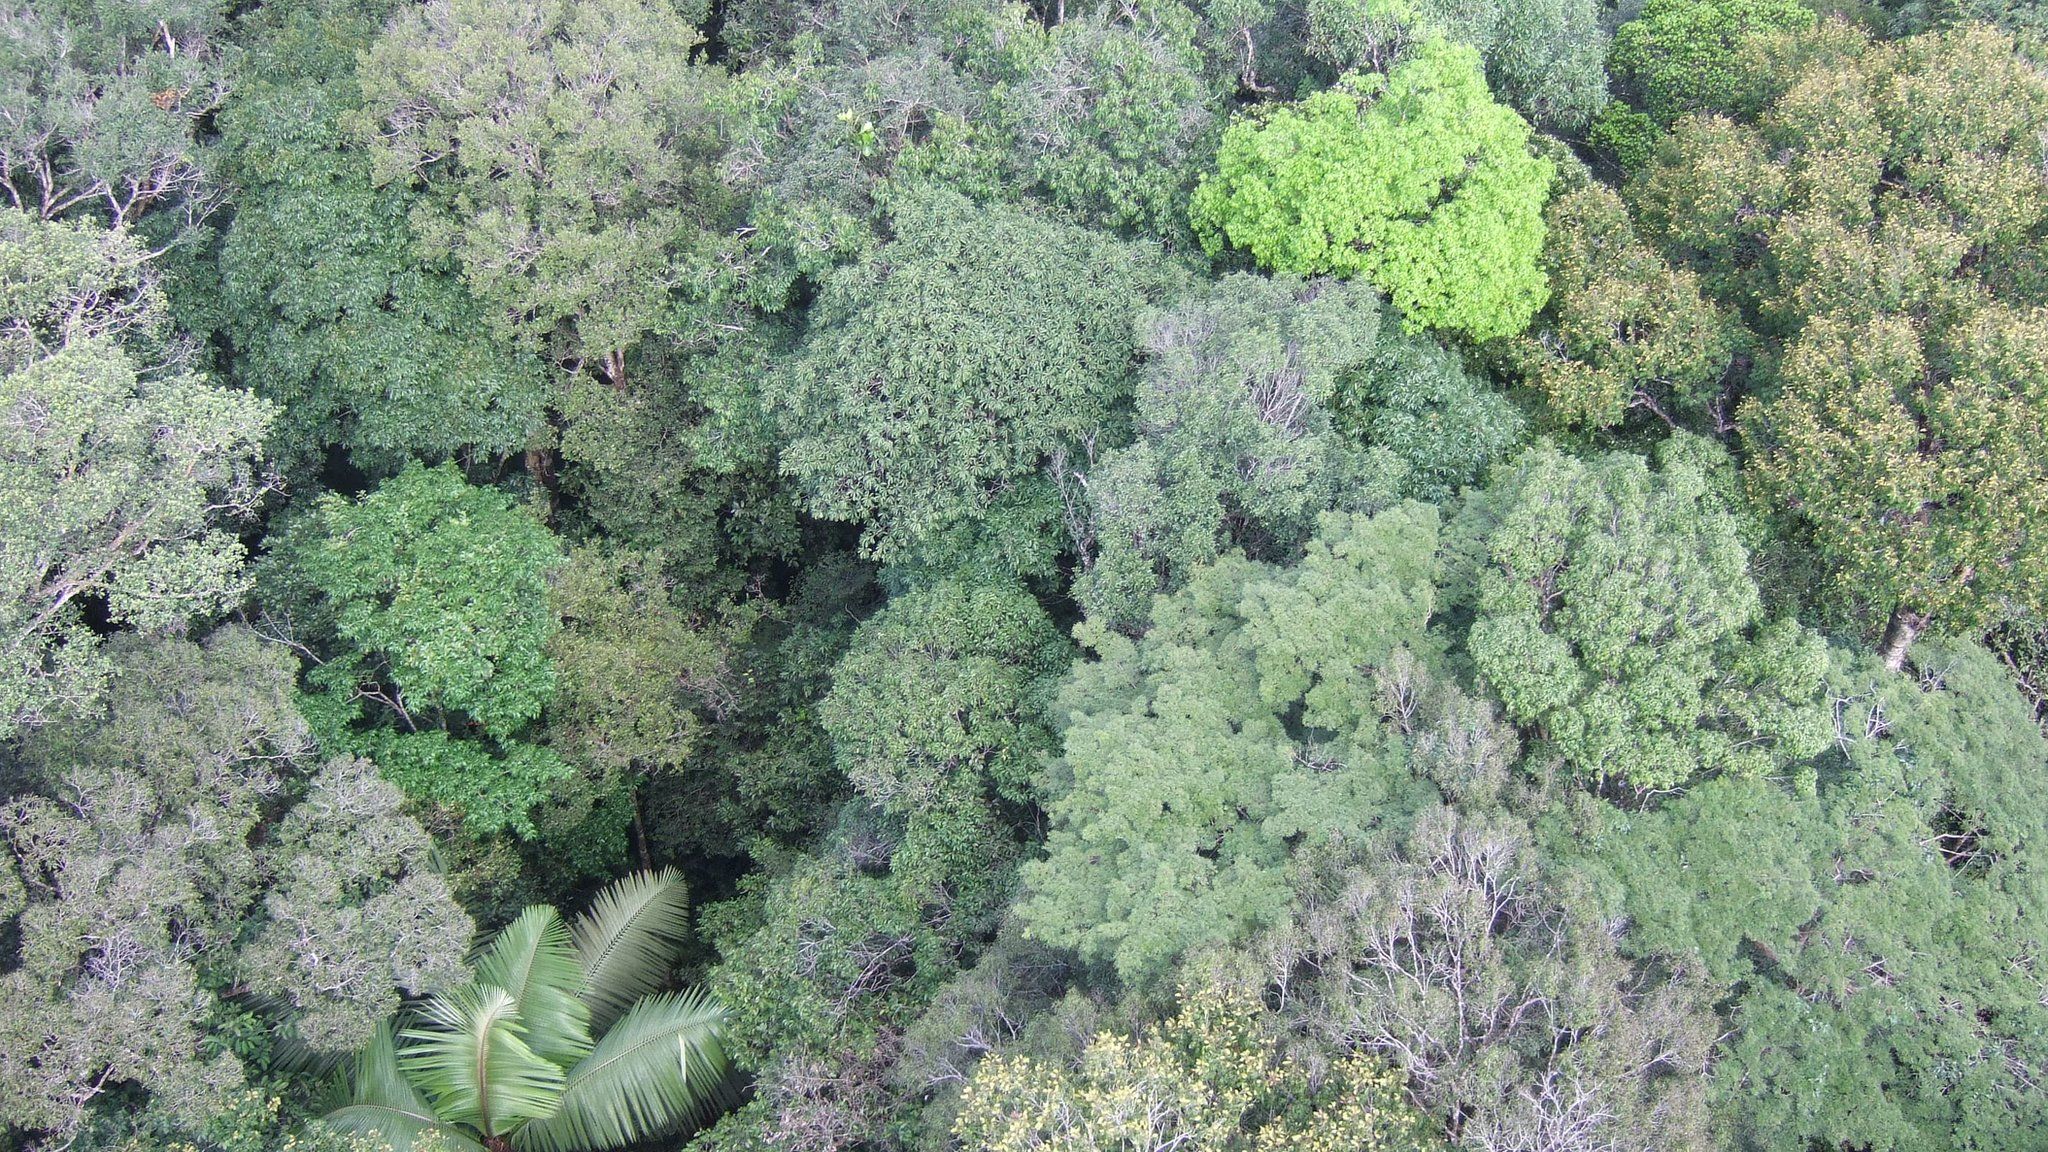 Rainforest canopy, Amazon (Image: Kyle Dexter)